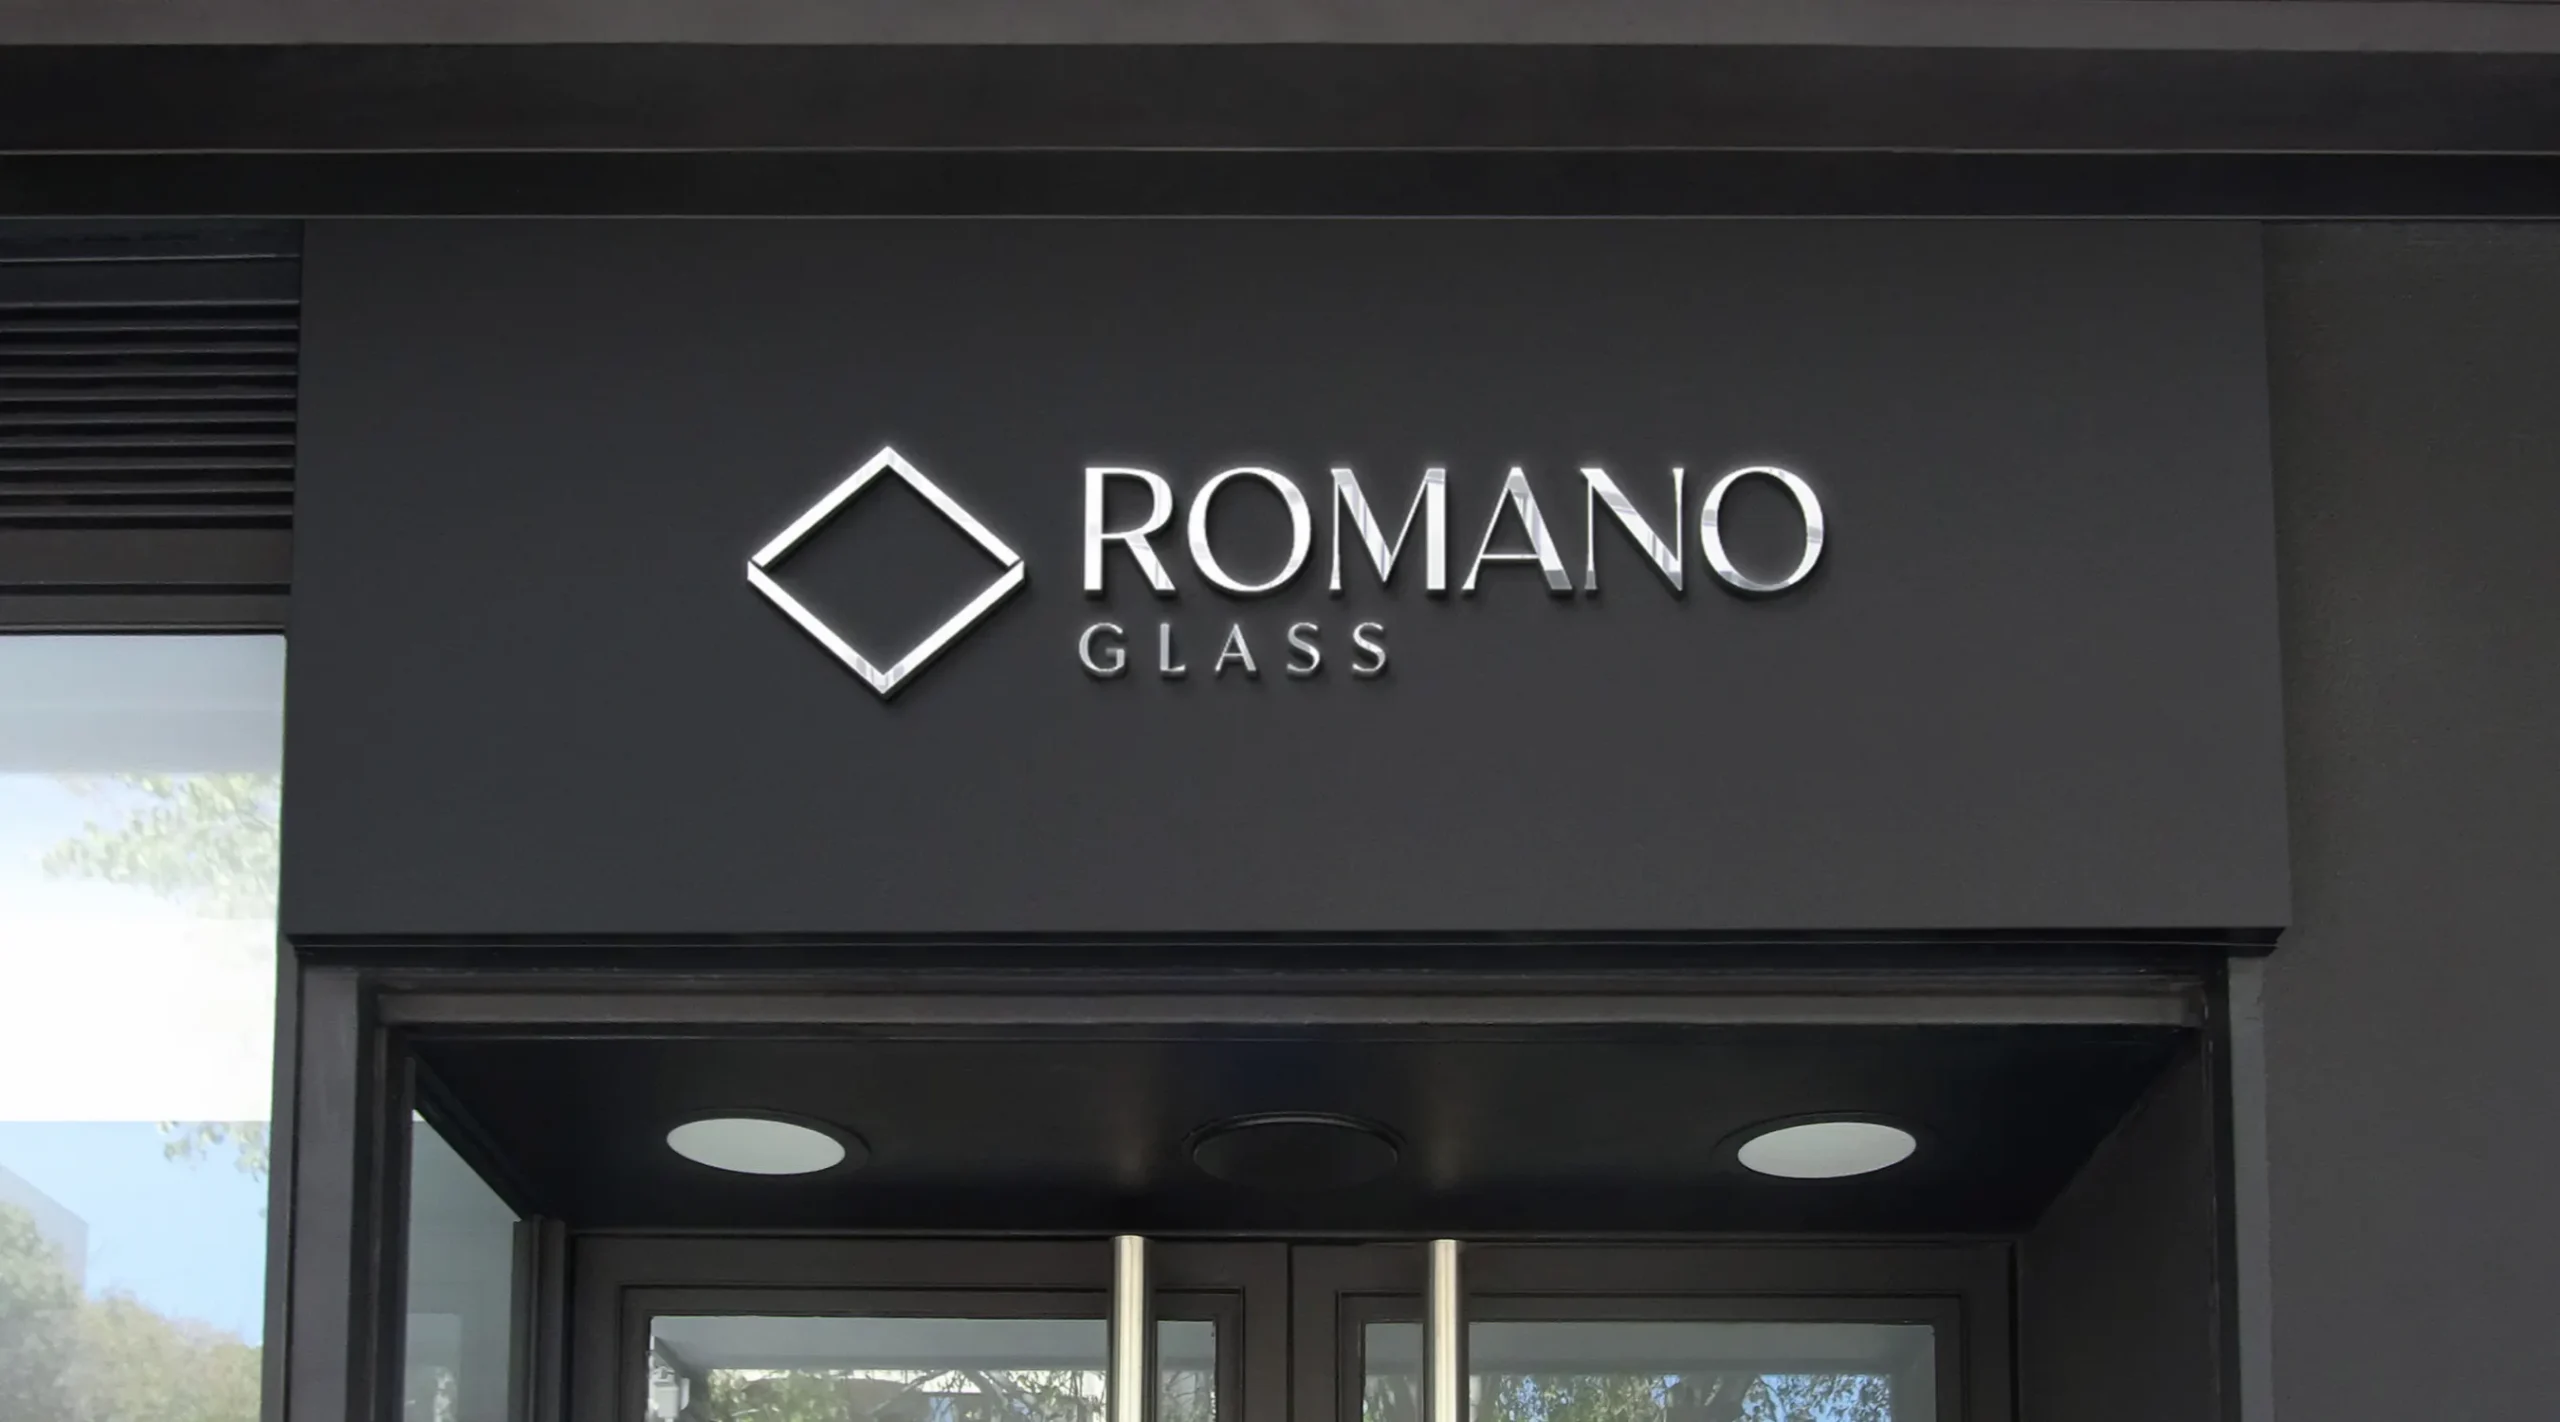 Letrero de Romano Glass en fachada de edificio.